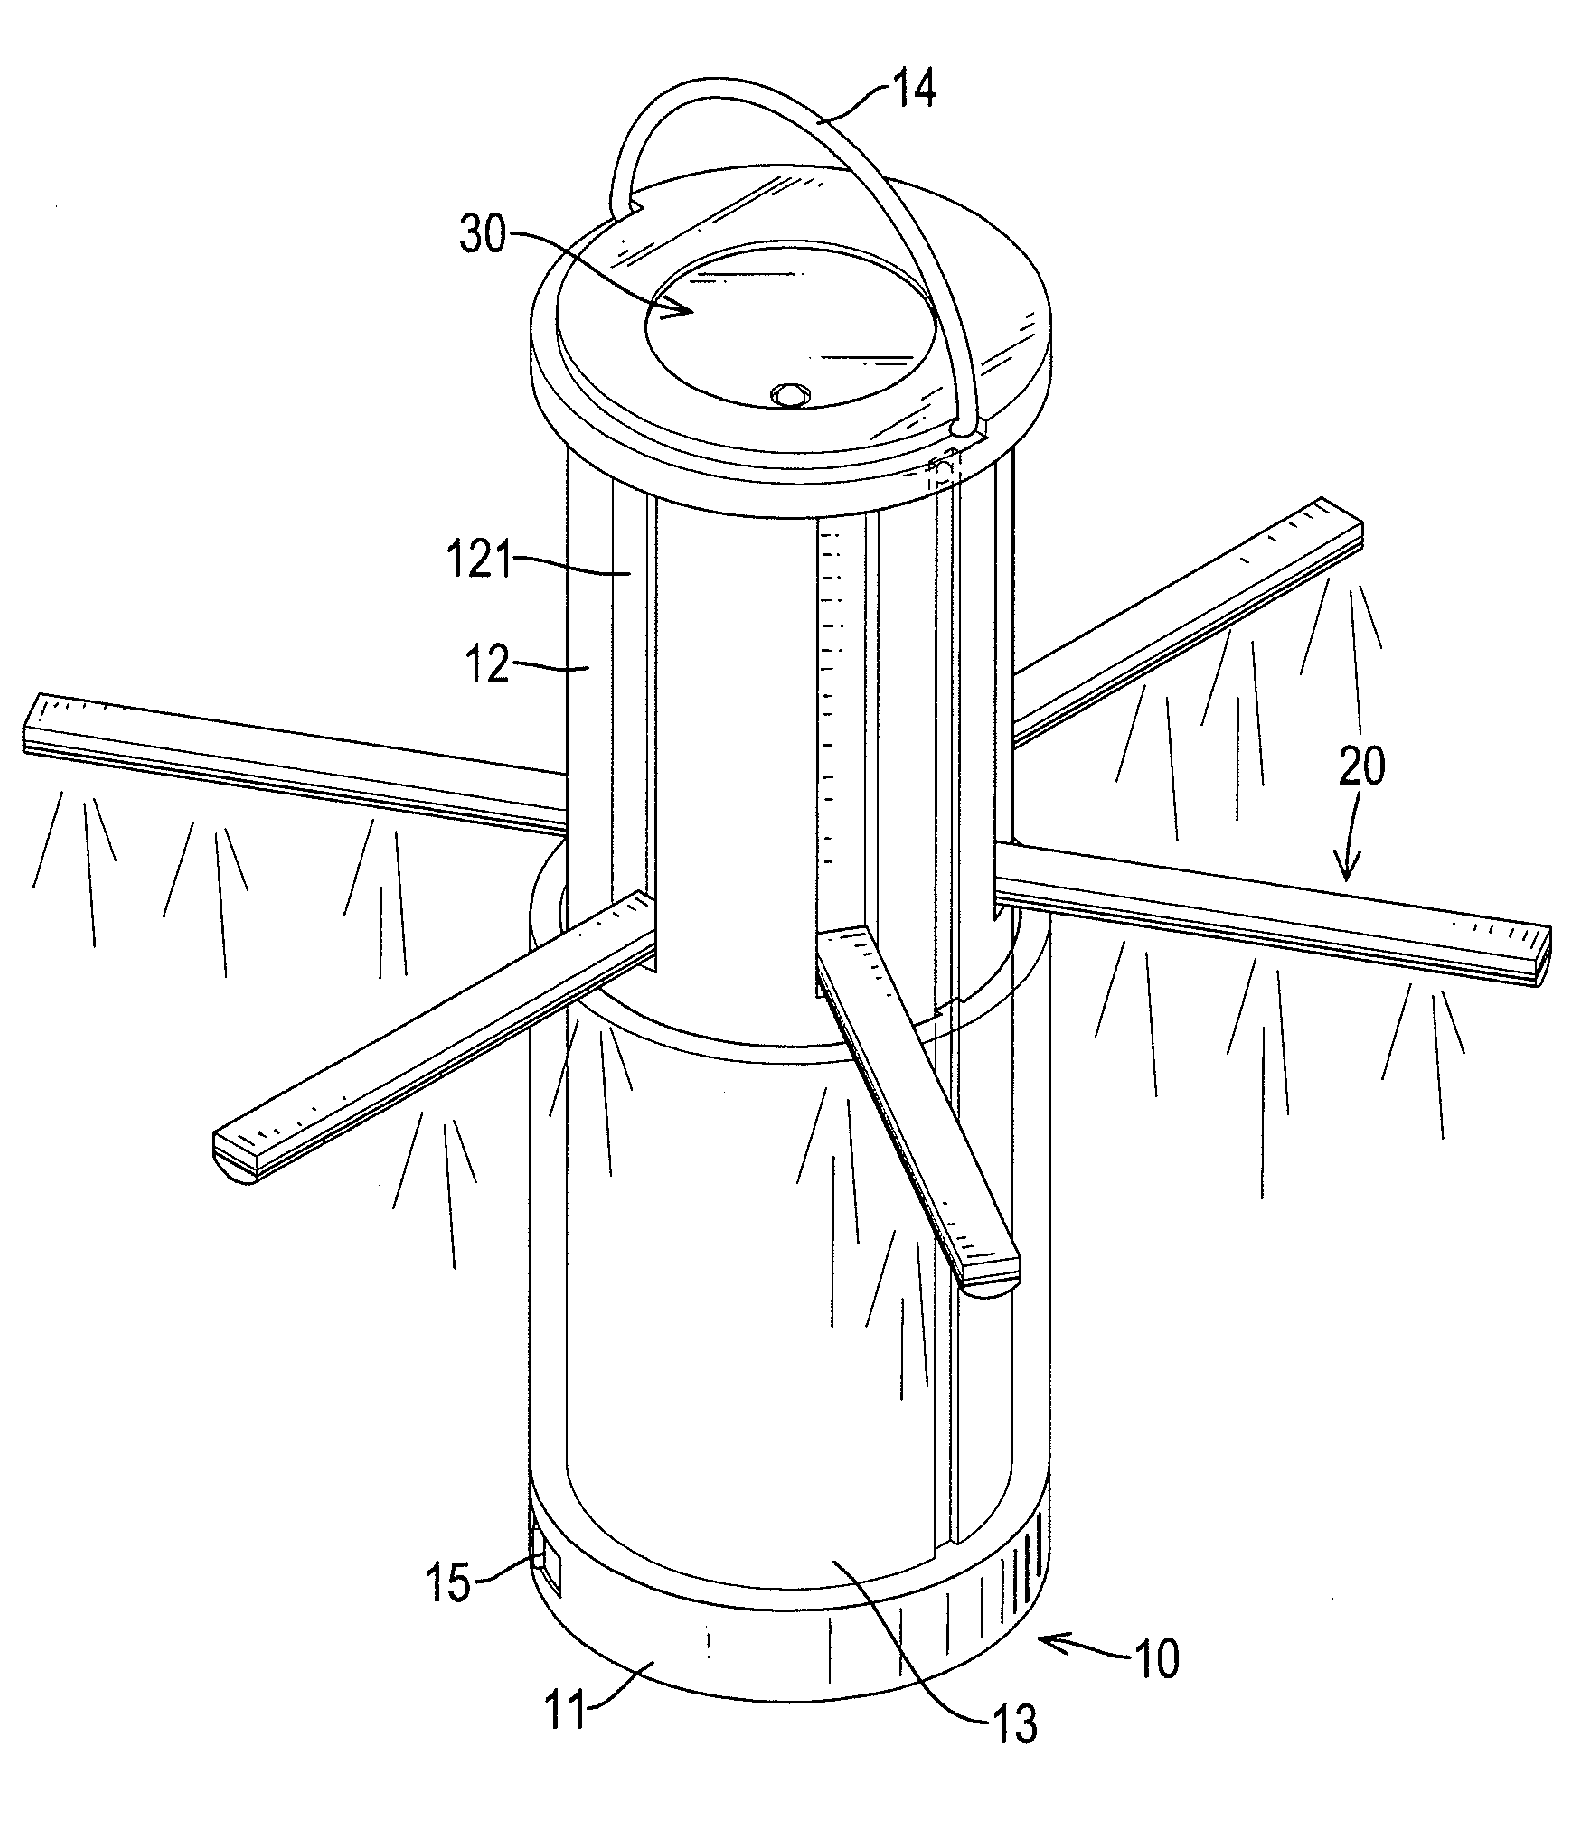 Multi-functional lantern